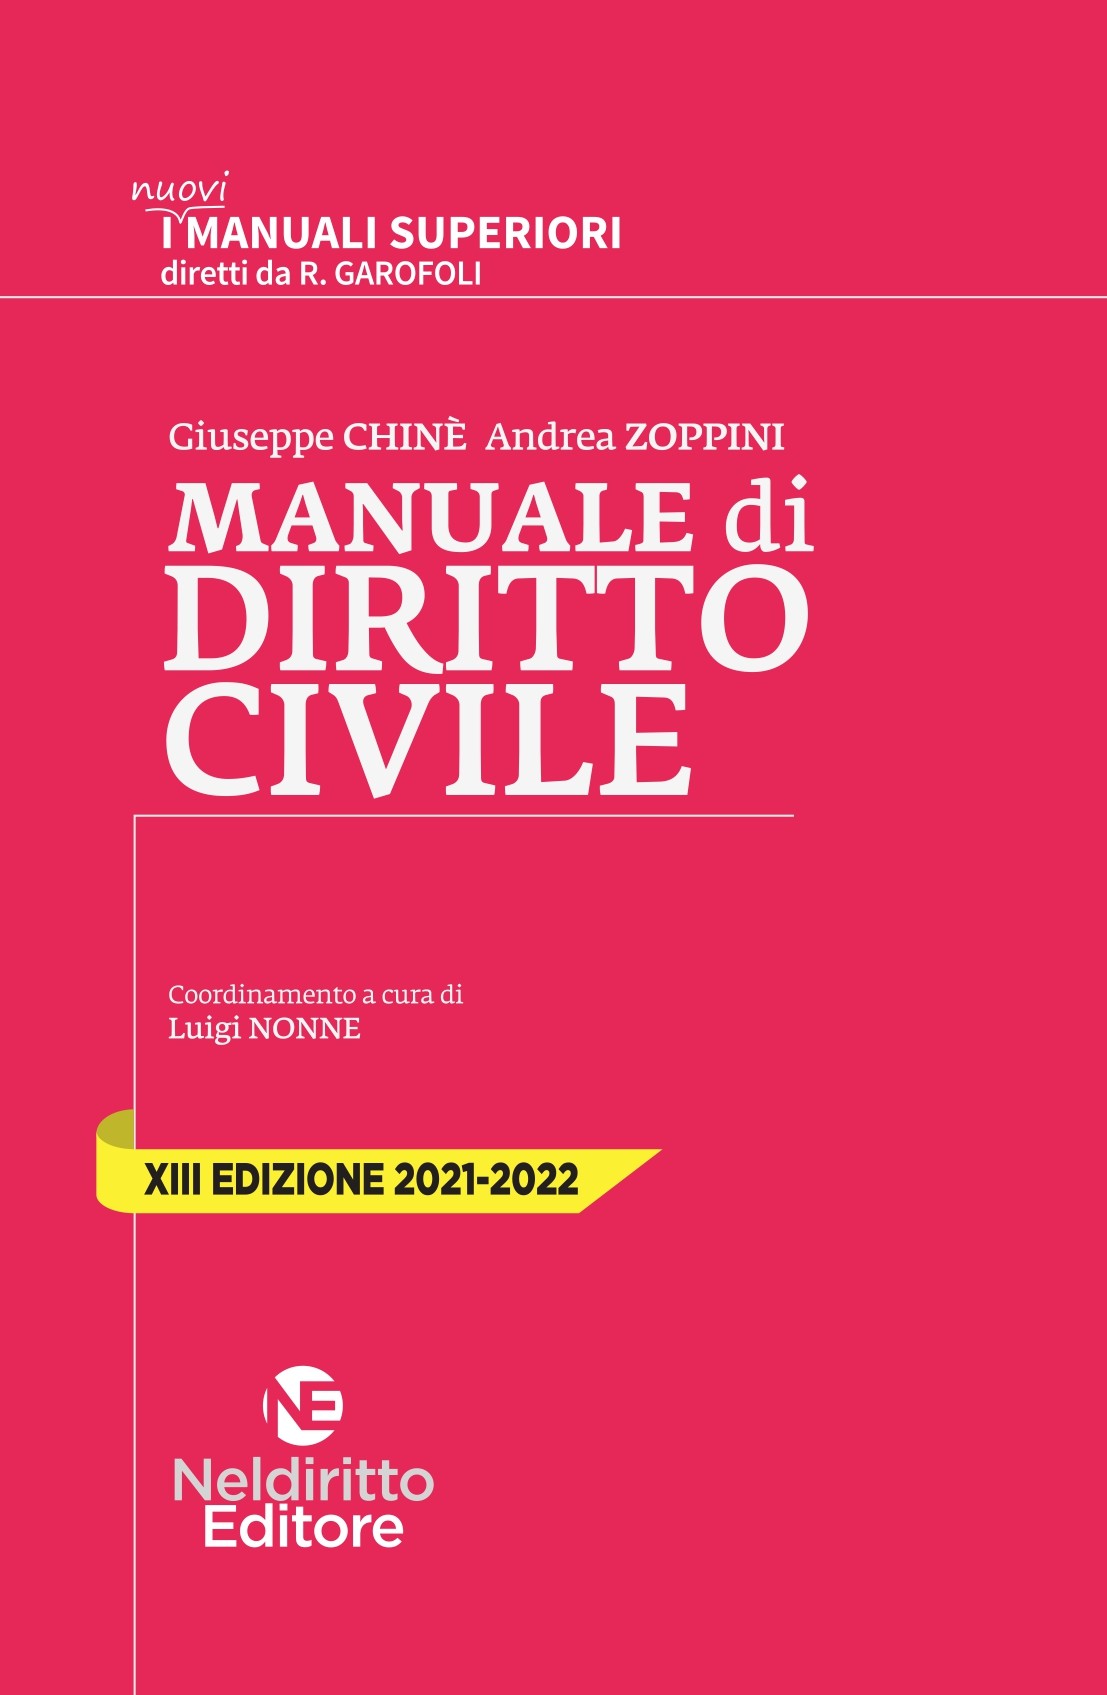 Manuale Superiore di Diritto Civile 2021/2022